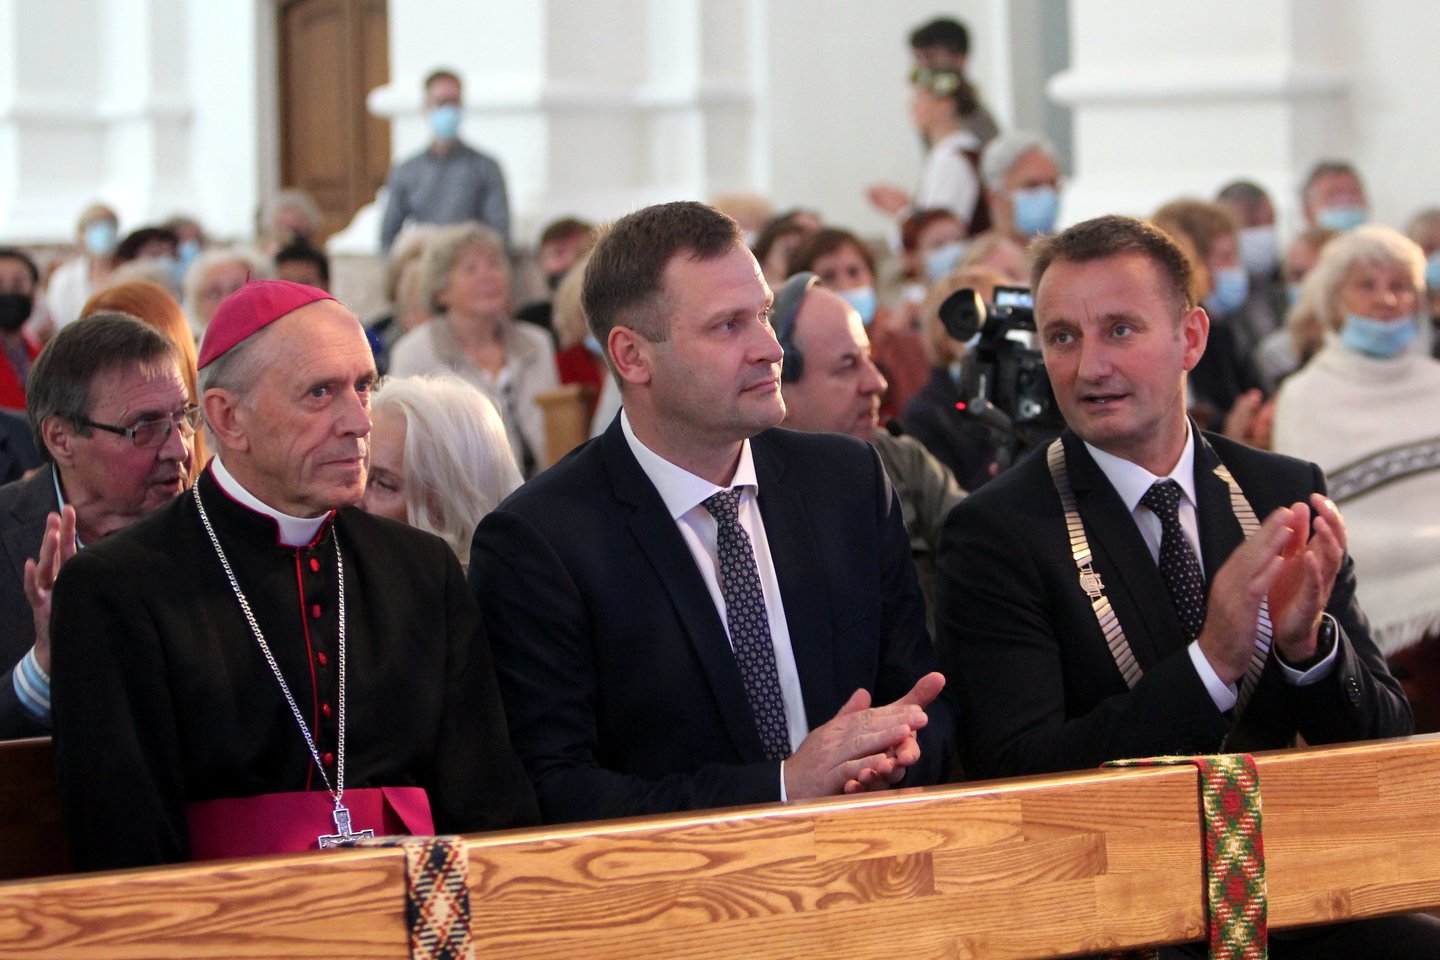  Iškilminga naujojo Šiaulių garbės piliečio inauguracija vyko Šiaulių katedroje.<br> R.Vitkaus nuotr.